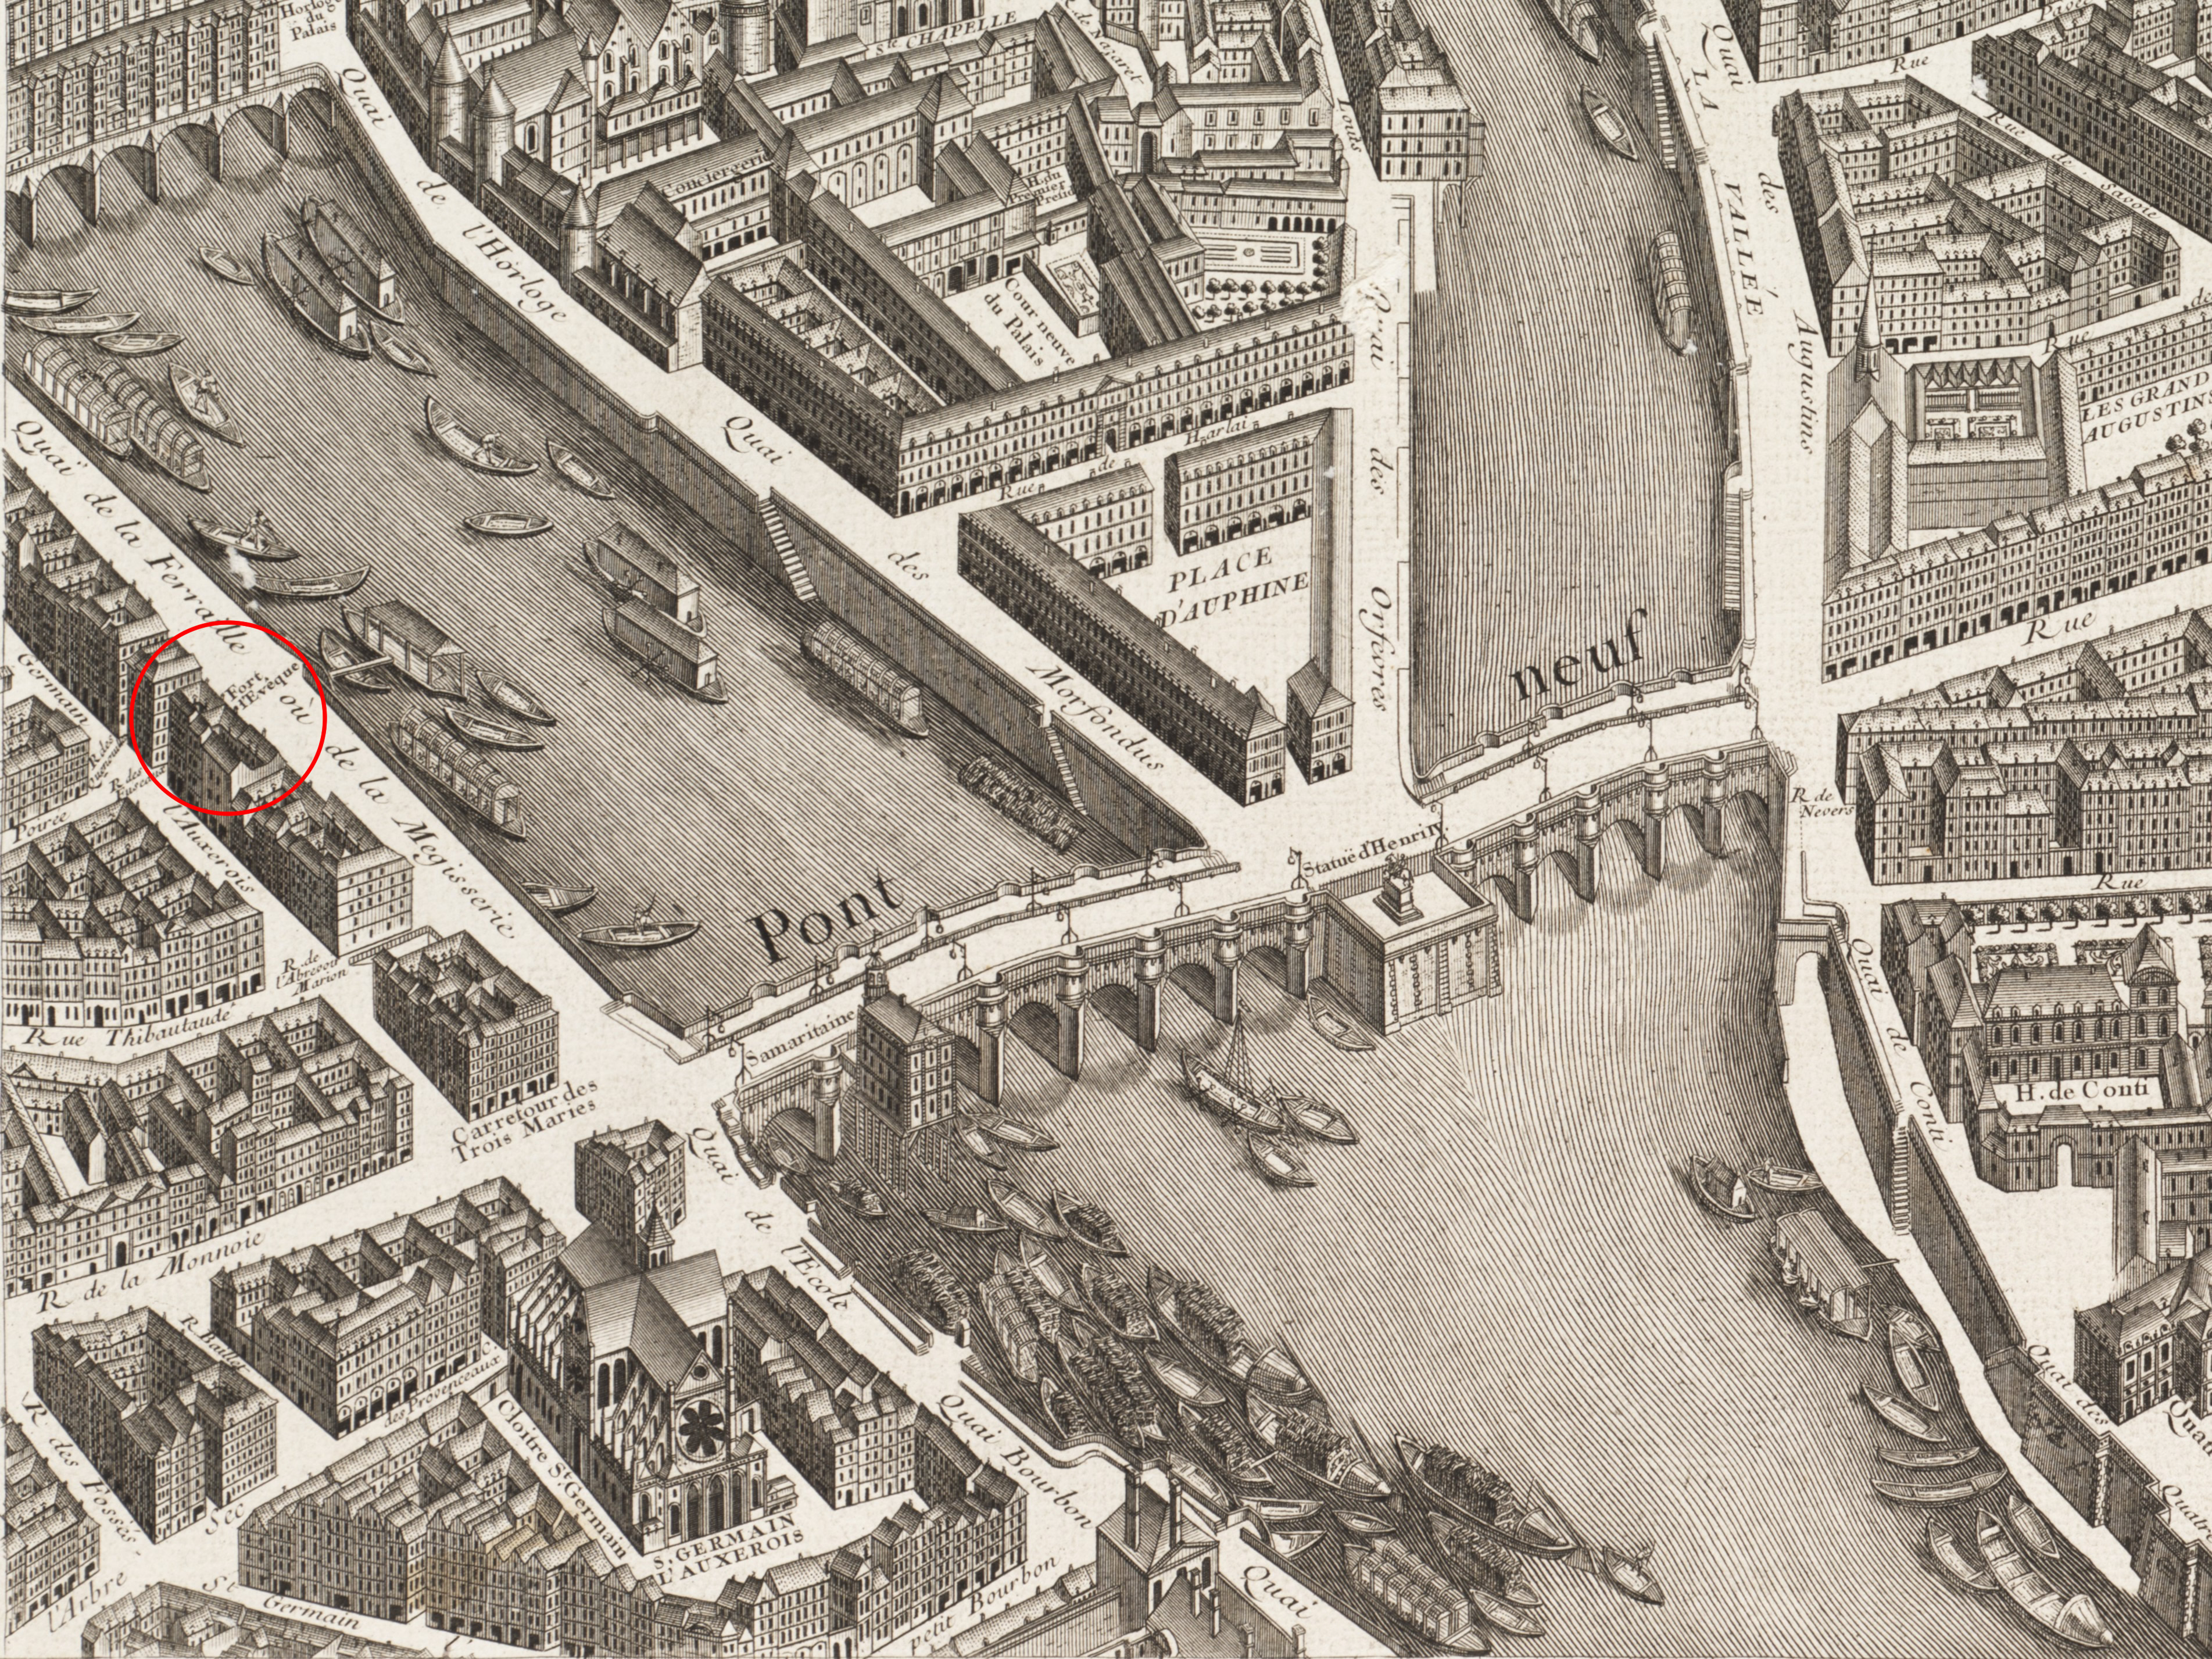 Fort Lévêque sur la plan de TurgotLa prison était située entre l'actuel no 19 de la rue Saint-Germain-L'Auxerrois et le no 16 du quai de la Mégisserie. Elle était très exigüe car elle n'avait que 35 mètres de profondeur sur 9 mètres de façade rue Saint-Germain-L'Auxerrois et moins sur le quai.